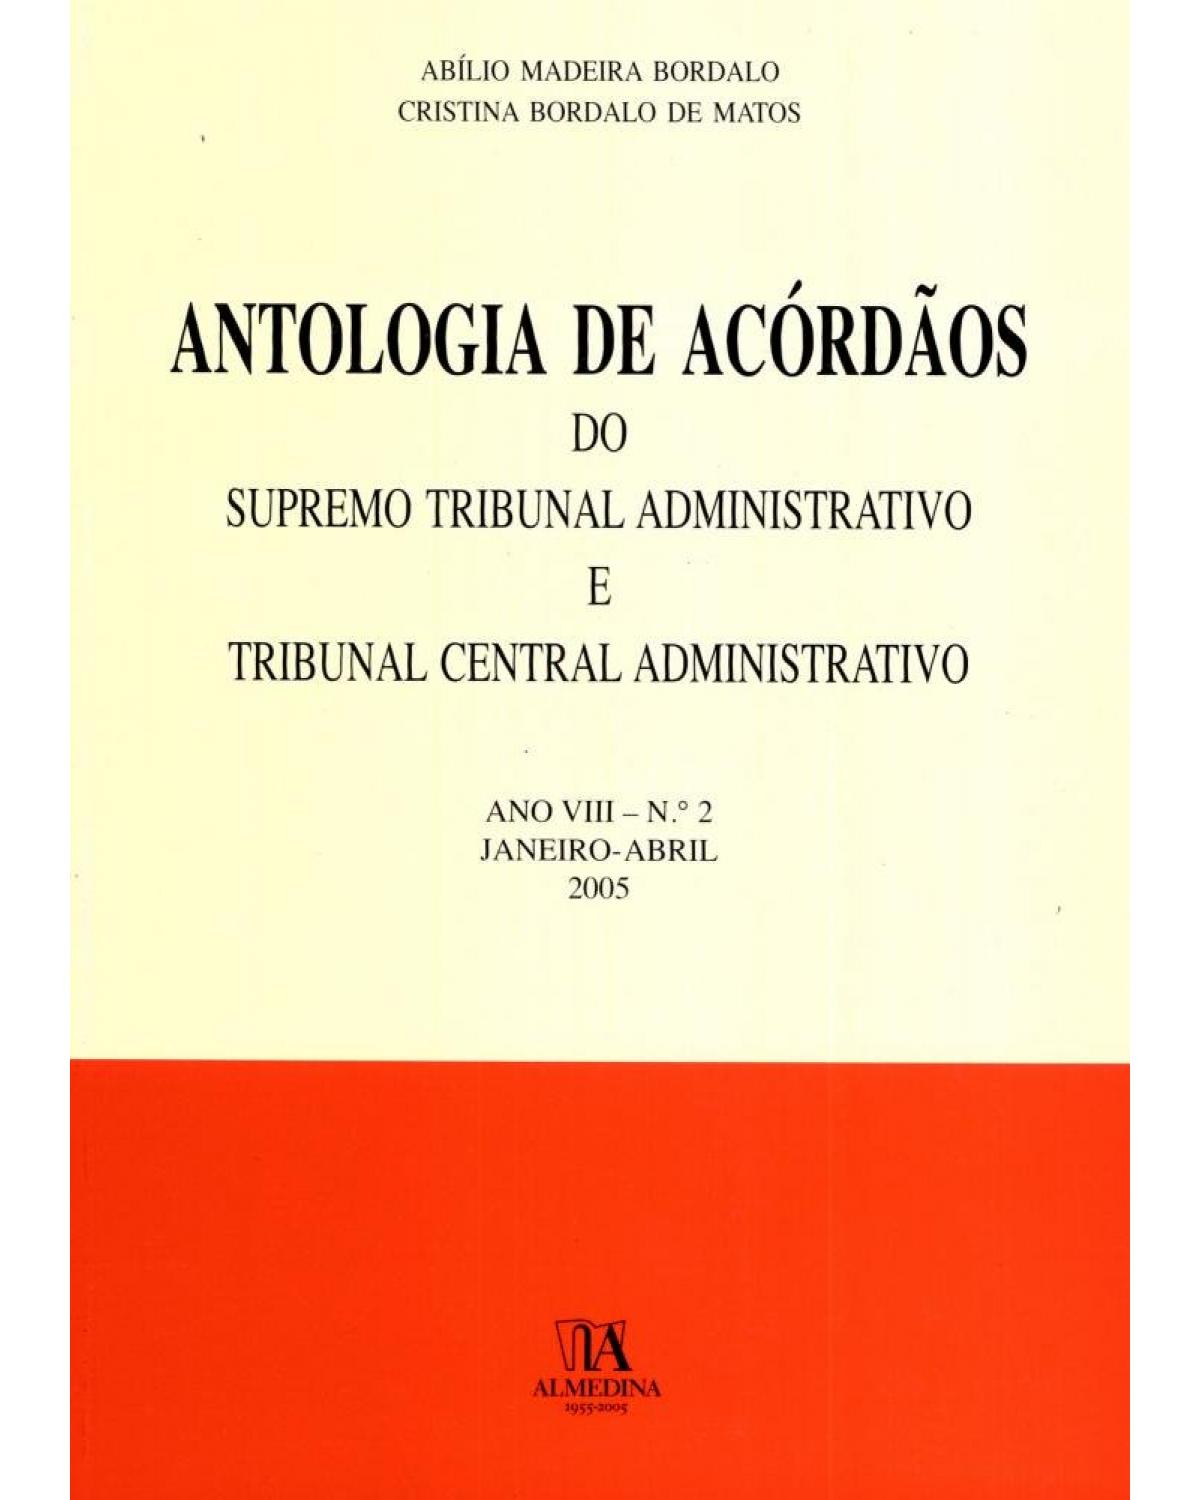 Antologia de acórdãos do supremo tribunal administrativo e tribunal central administrativo - ano VIII - Janeiro-abril 2005 - 1ª Edição | 2005